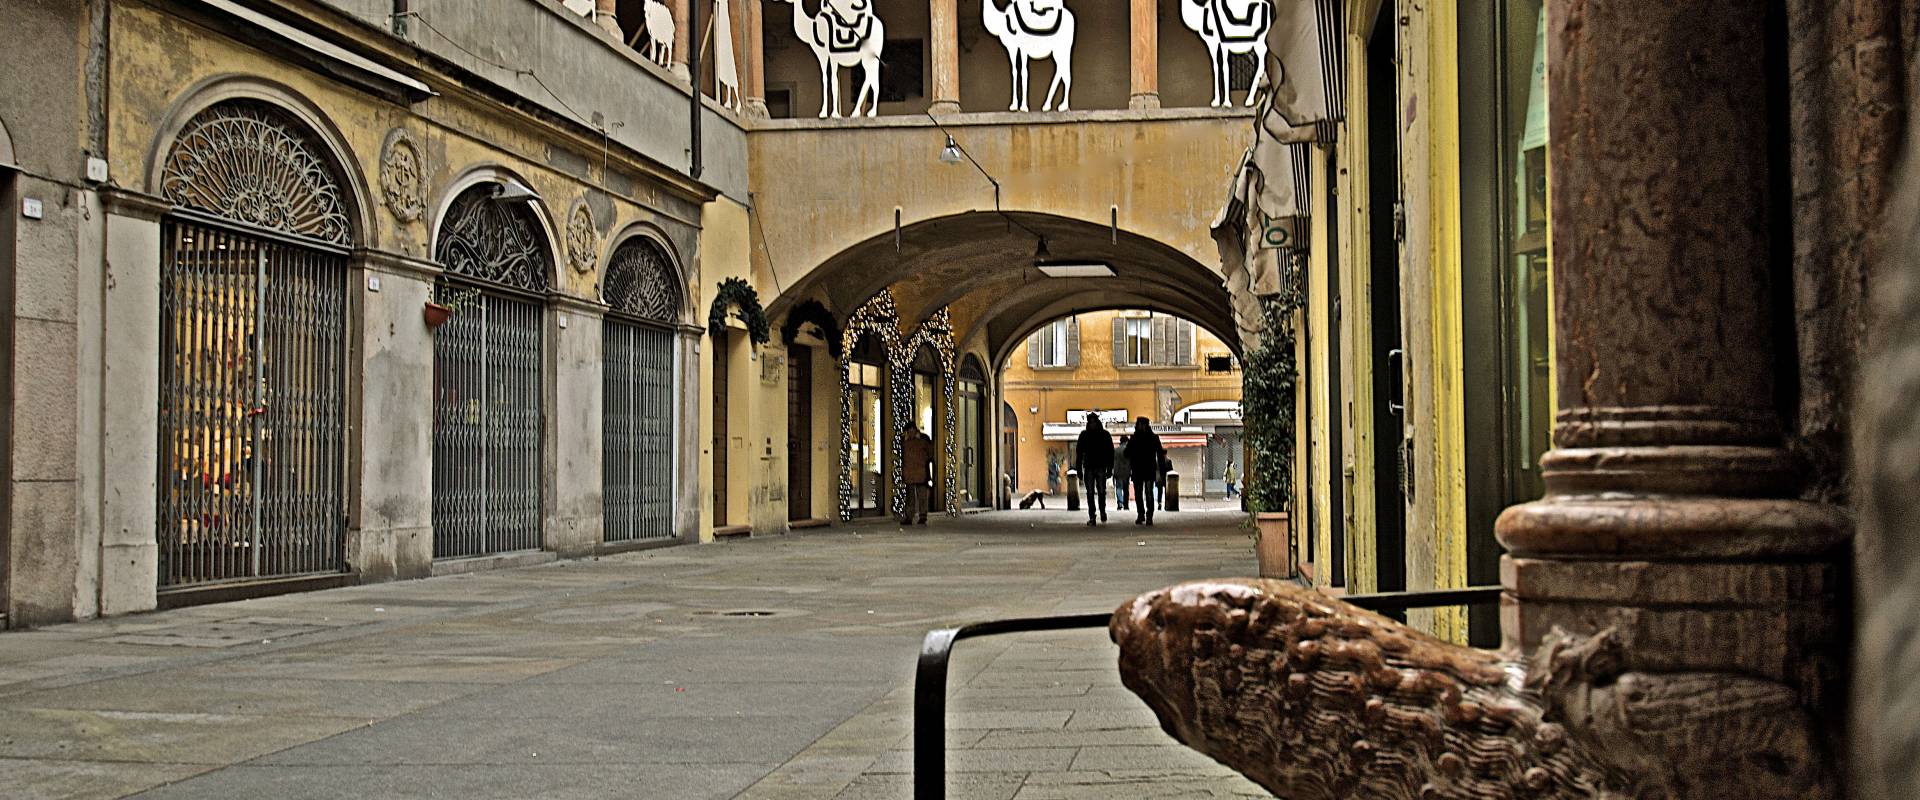 Percorso pedonale del "Broletto" che unisce piazza del Duomo con piazza San Prospero foto di Caba2011